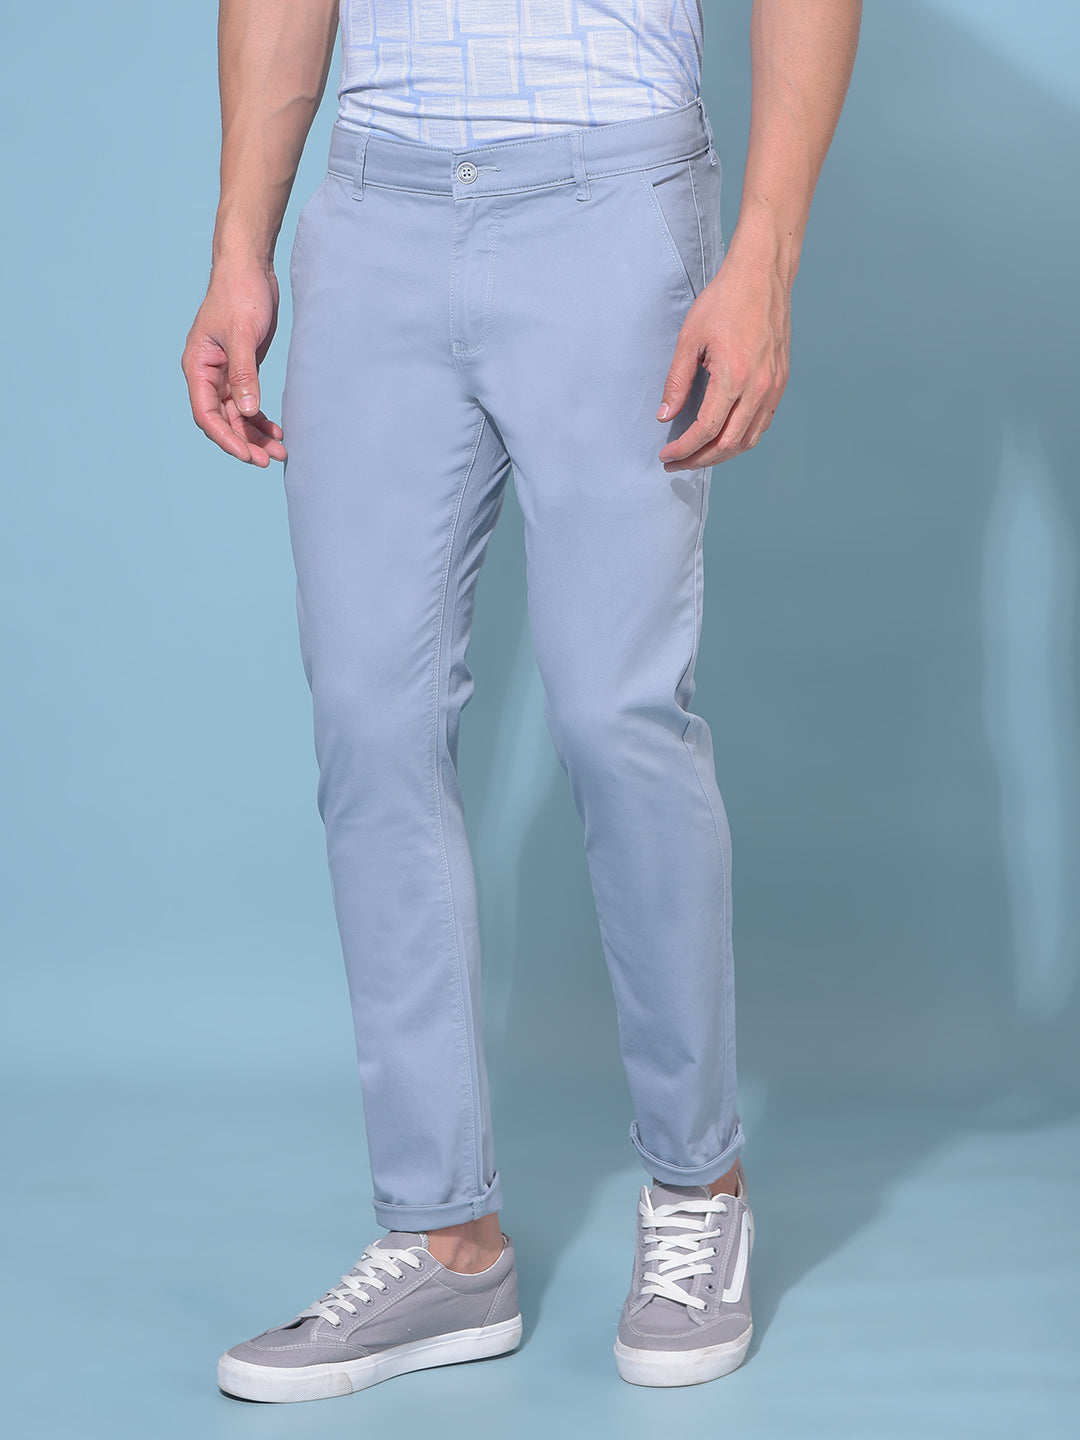 Blue Stretchable Cotton Trousers-Men Trousers-Crimsoune Club